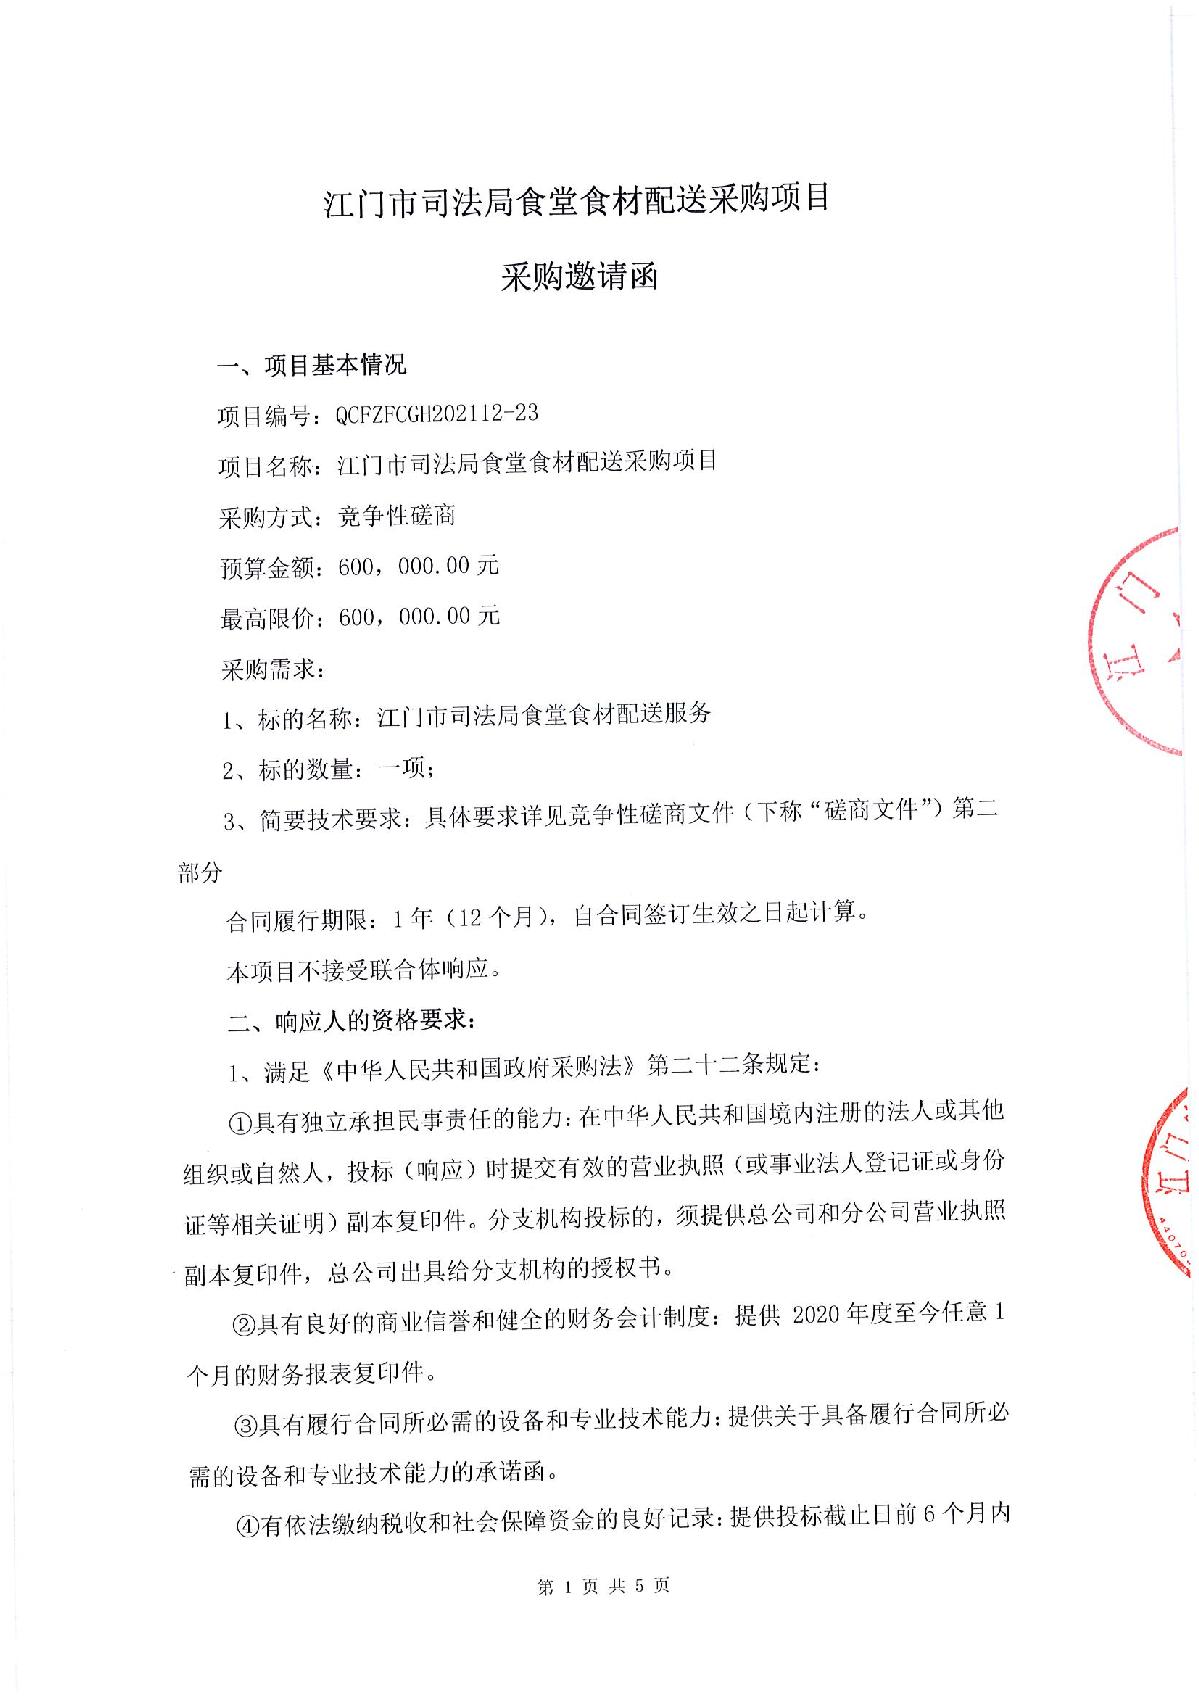 采购邀请函-江门市司法局食堂食材配送采购项目_1.JPG